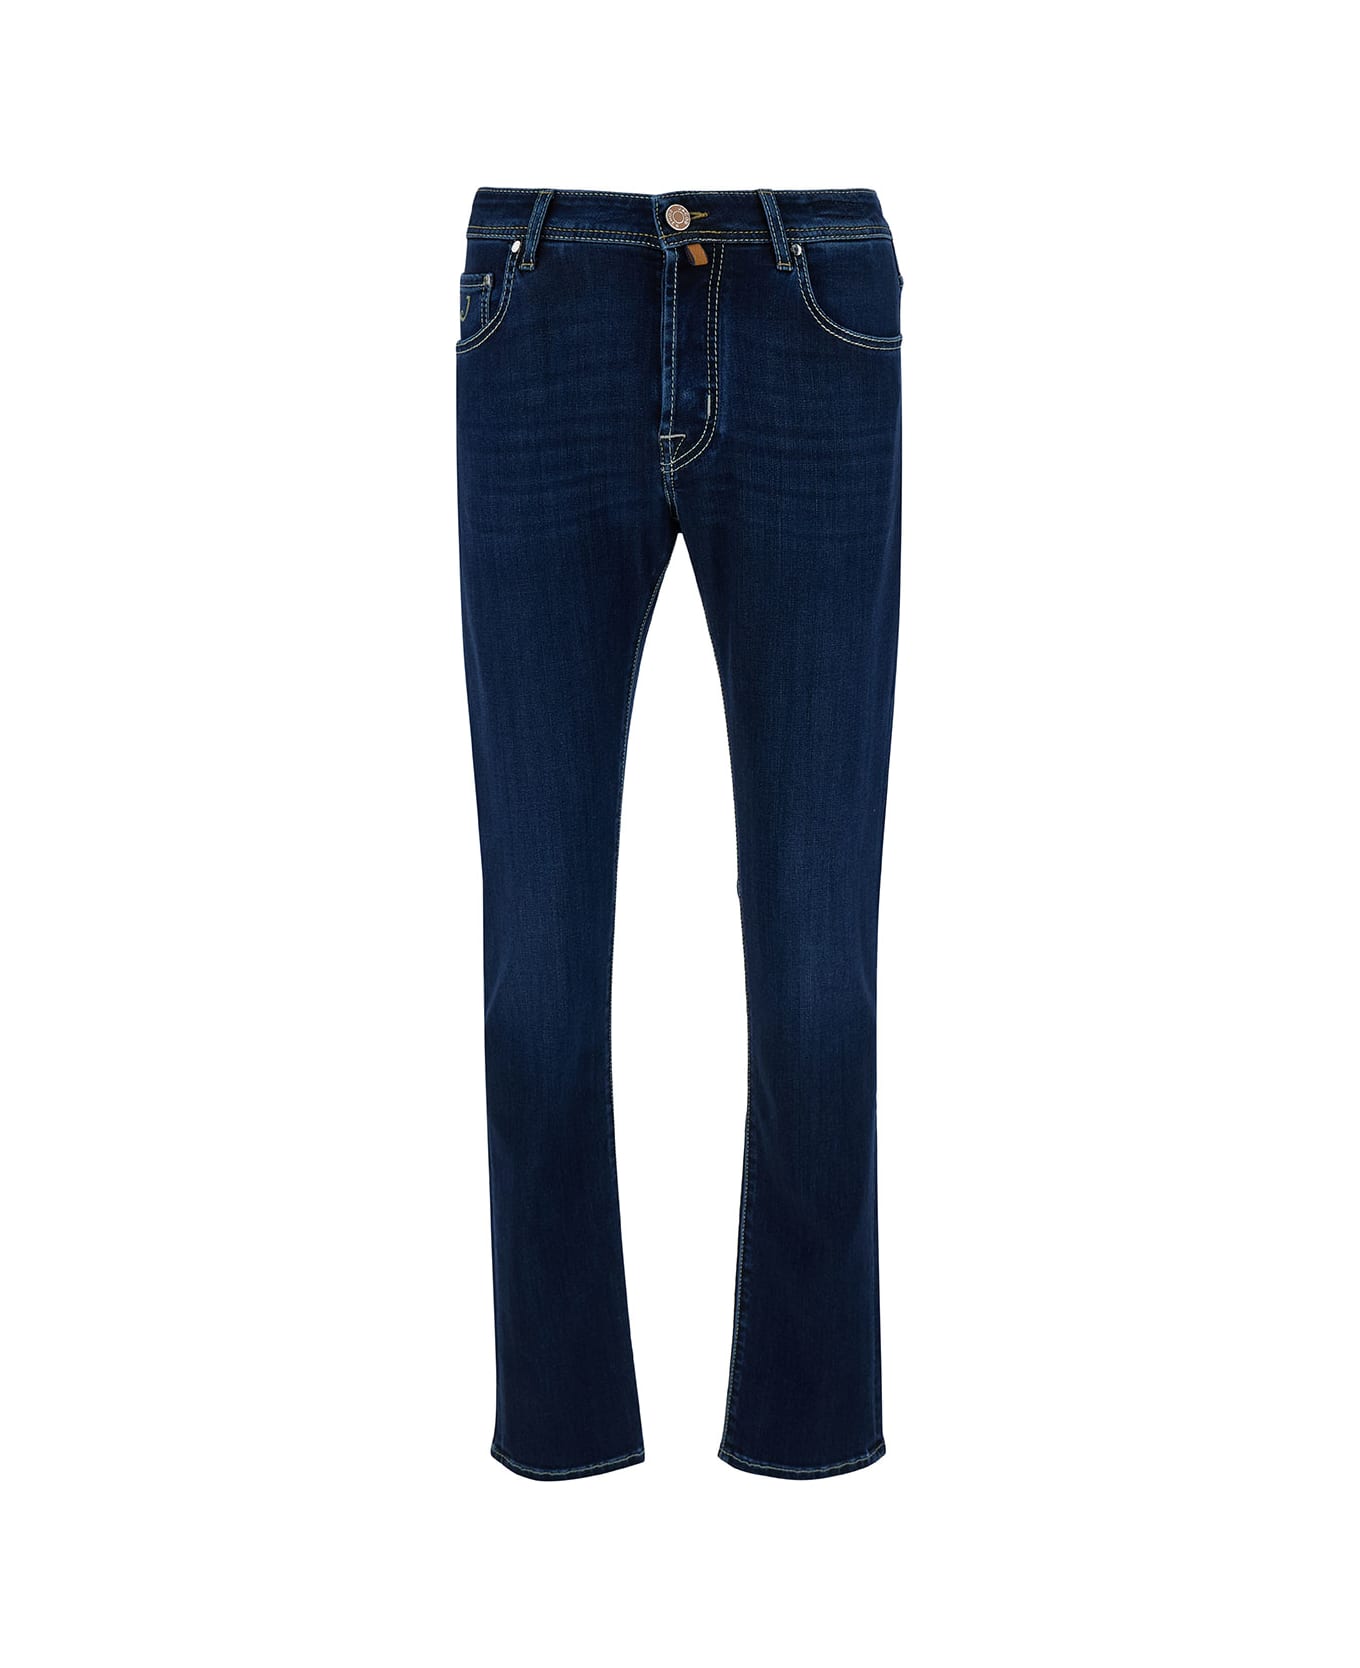 Jacob Cohen Low Waist Blue Slim Jeans In Cotton Blend Man - Blu